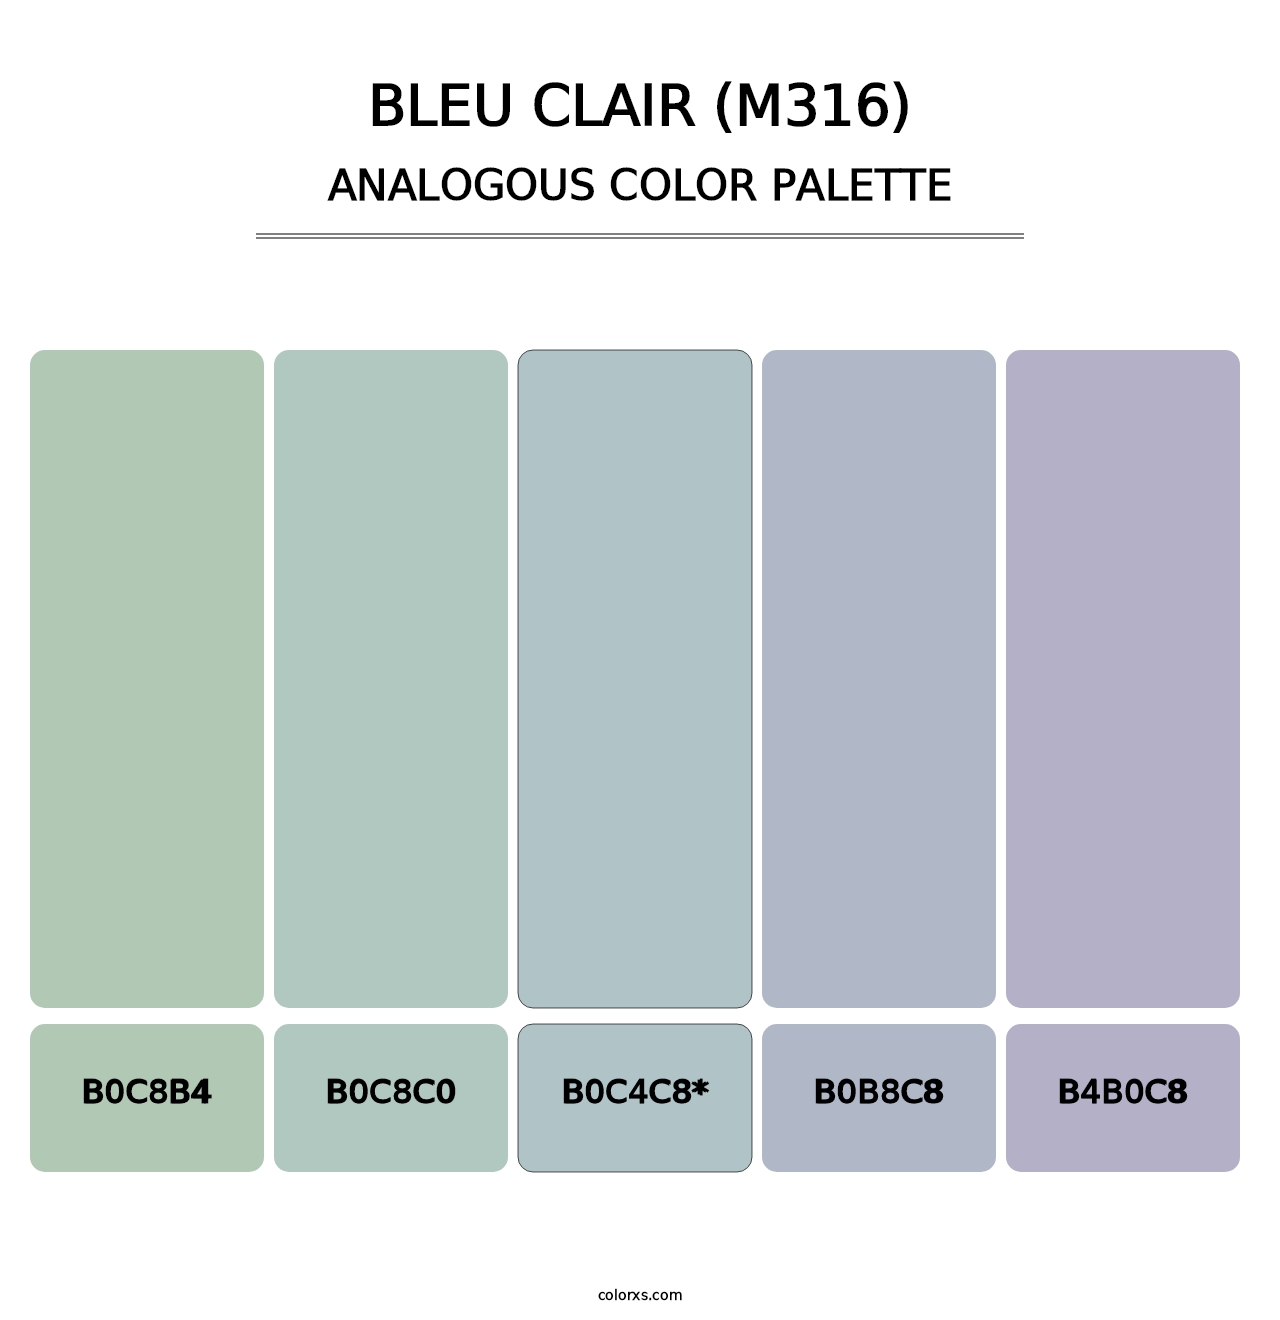 Bleu Clair (M316) - Analogous Color Palette